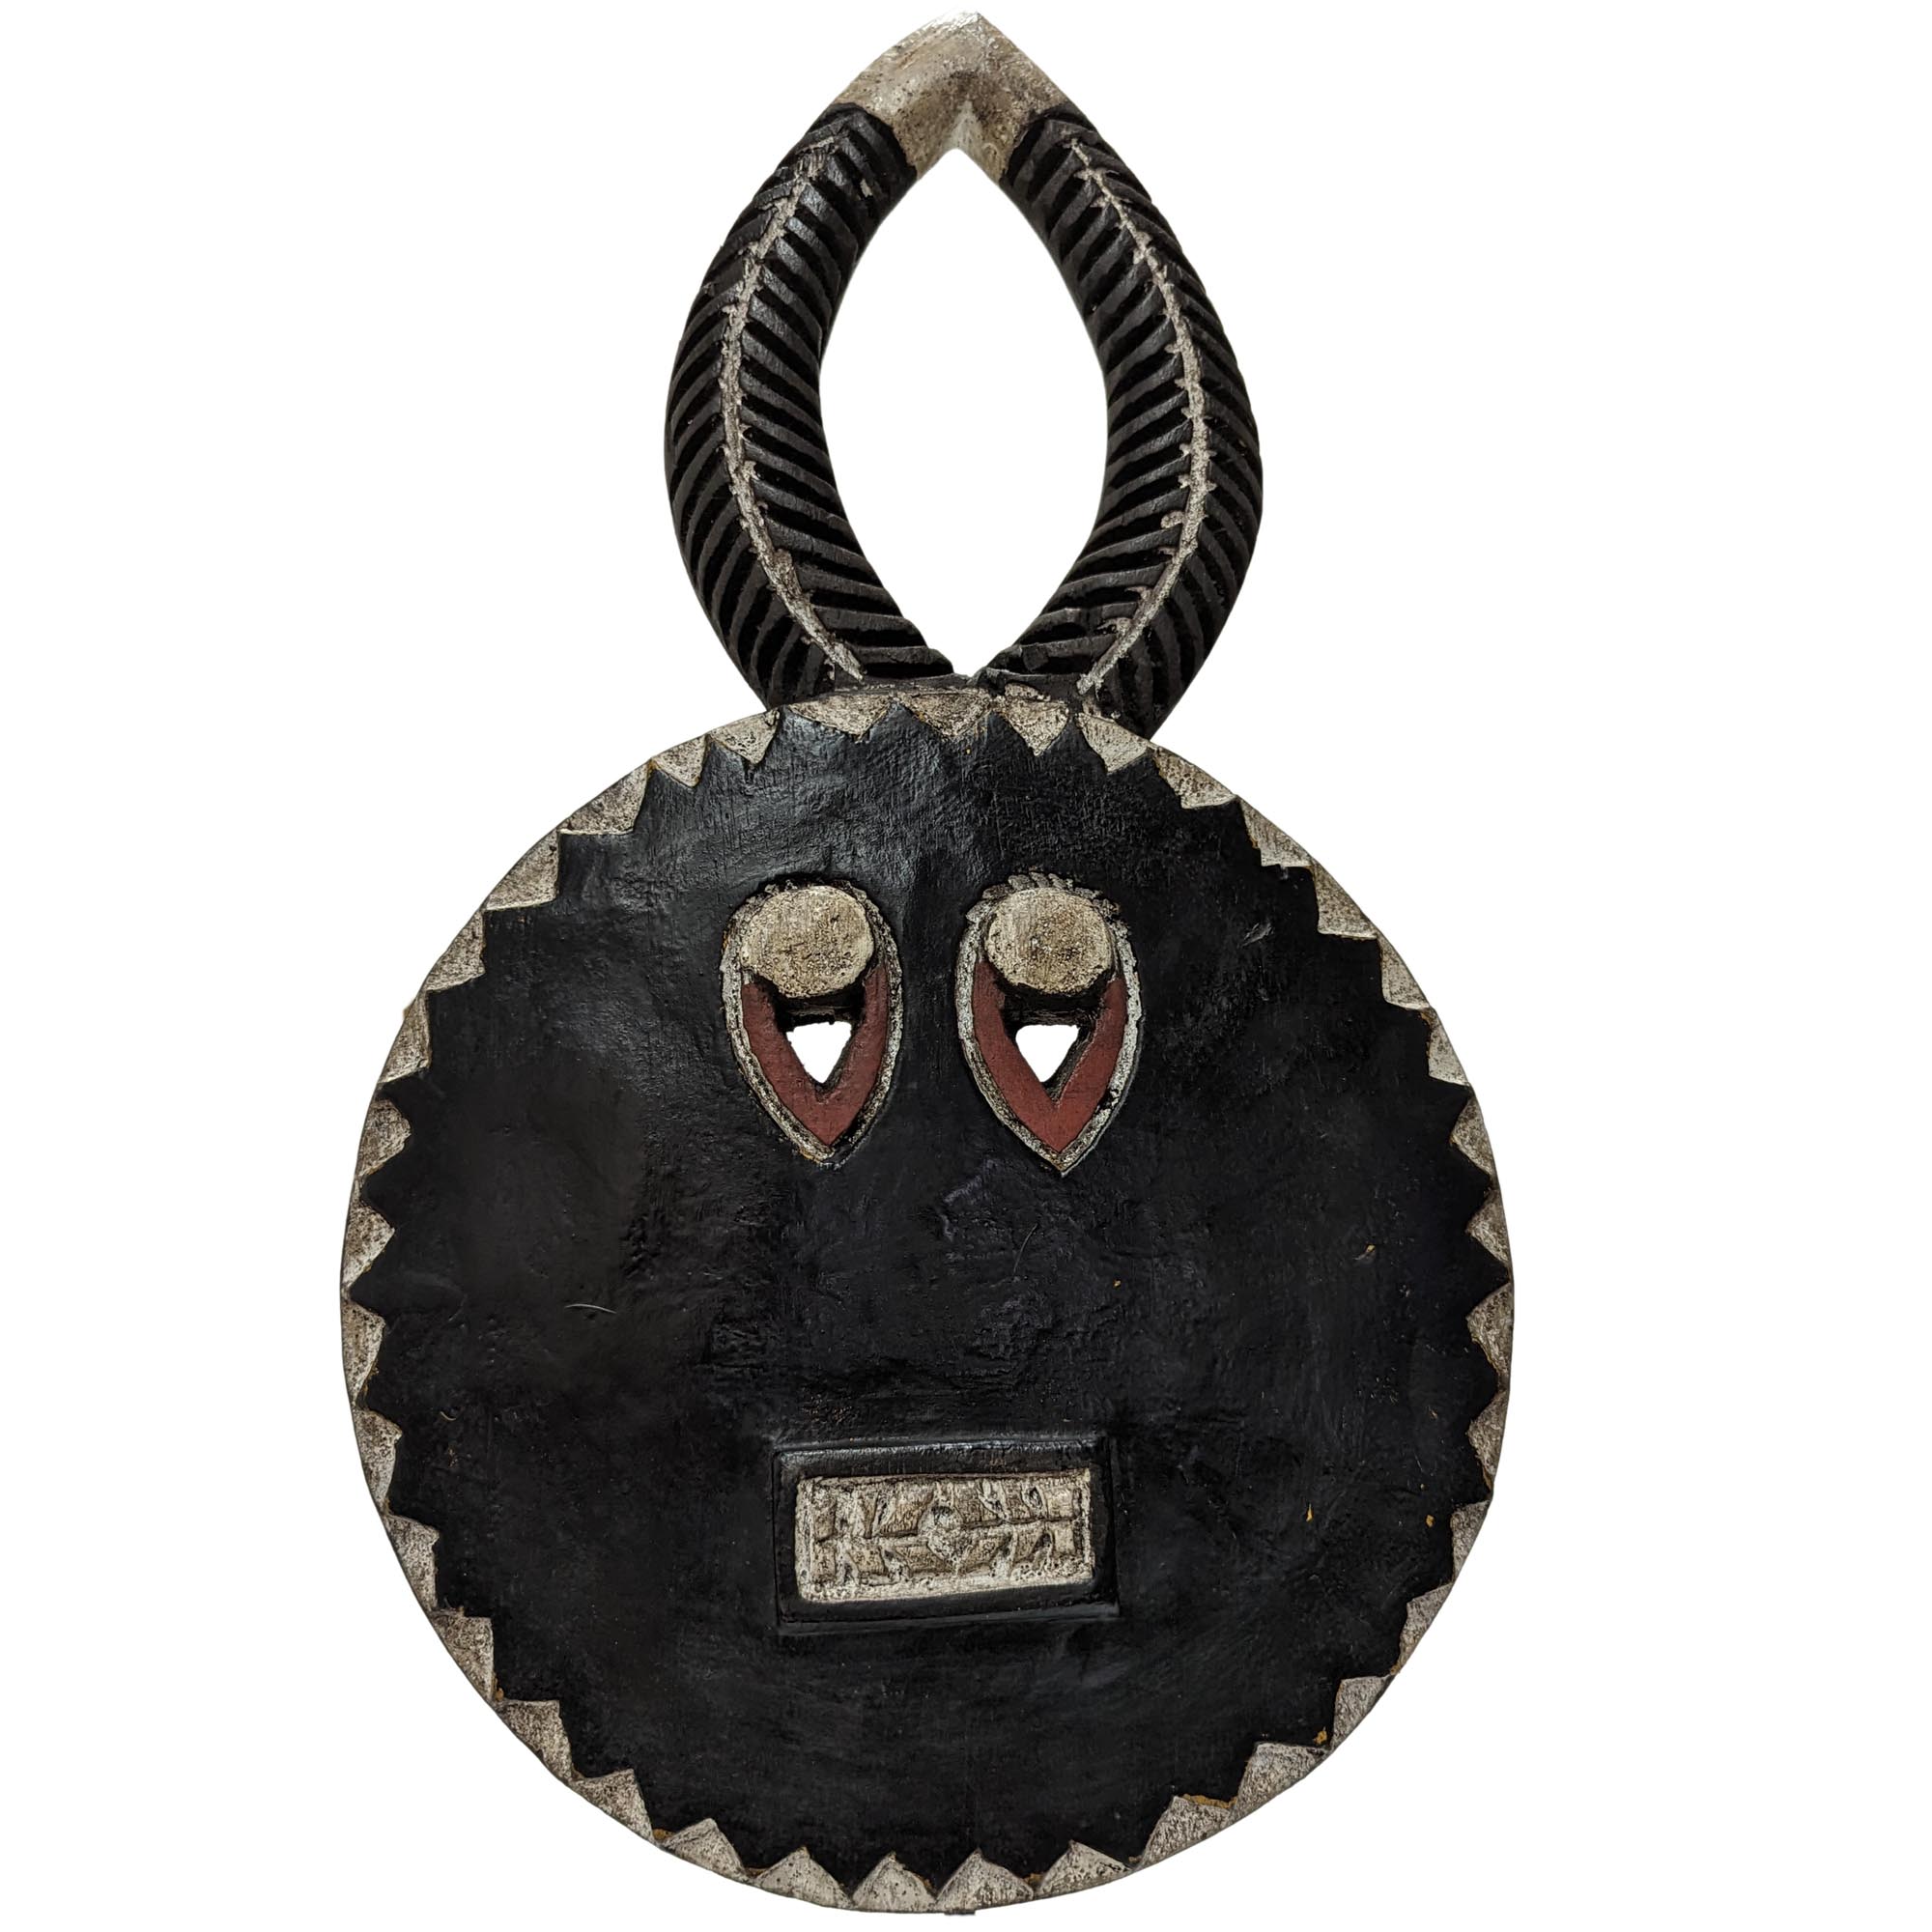 アフリカ 仮面 お面 マスク バウレ族 プレプレ アフリカ雑貨 